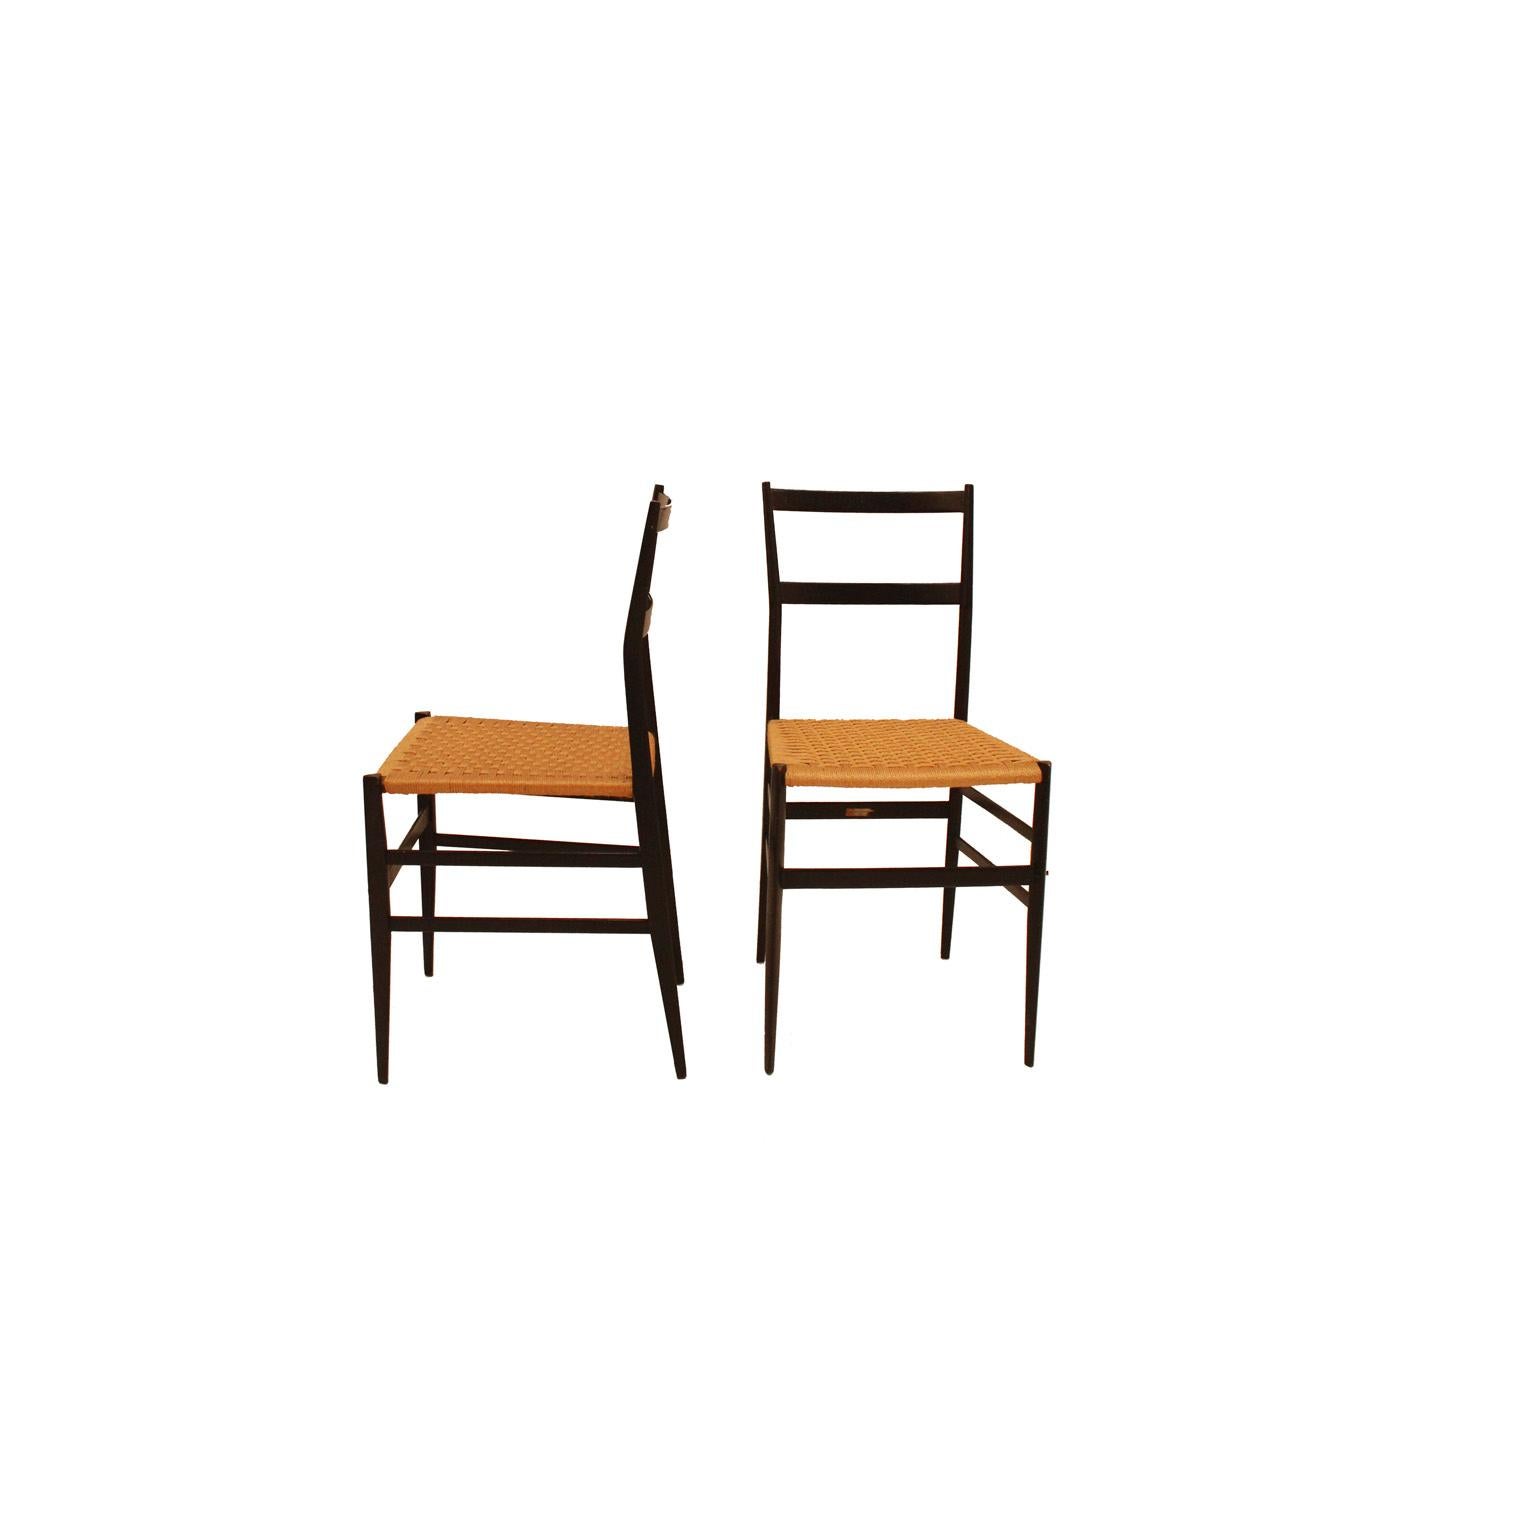 Ensemble de huit chaises mod. Superleggera conçues par Gio Ponti pour Figli Di Amadeo Cassina. Fabriqué en bois de frêne massif et en rotin. Italie 1957. Le défi de sa construction est contenu dans la section triangulaire des jambes, de seulement 18